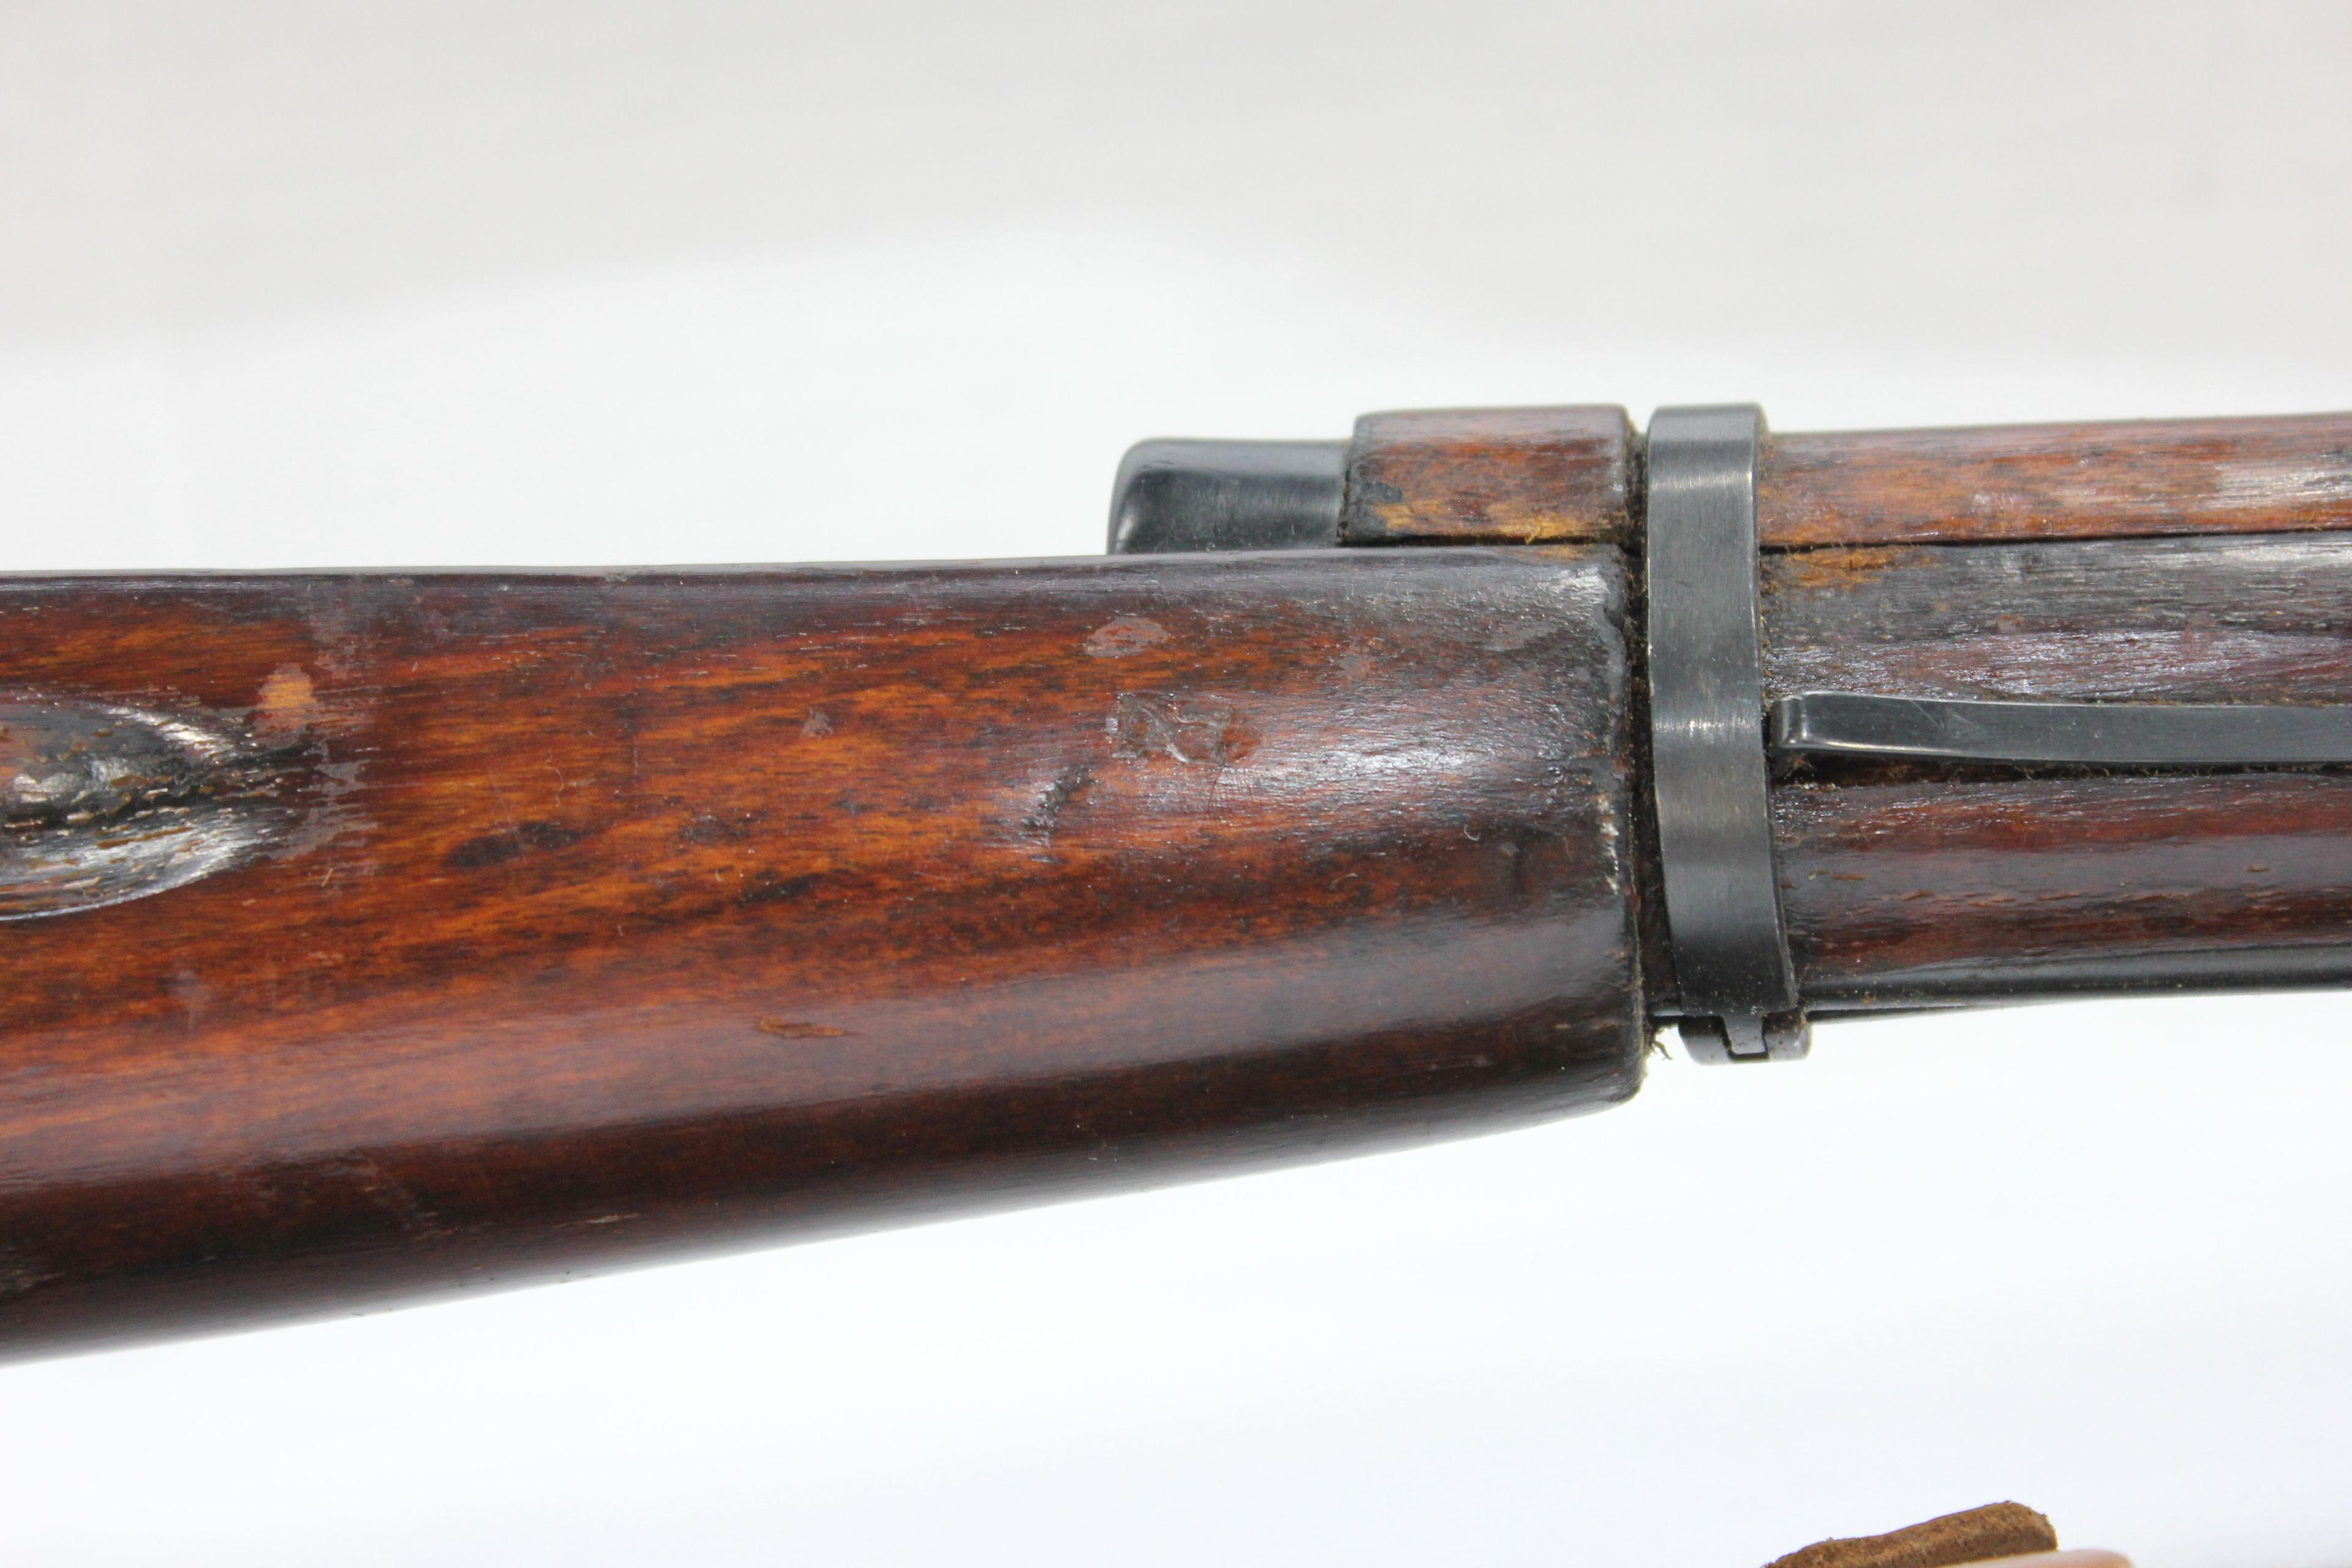 Russian Mosin Nagant Model 91/30 7.62x54R Cal. Rifle w/Bar & Sickle Crest, Synth. & Original Stocks